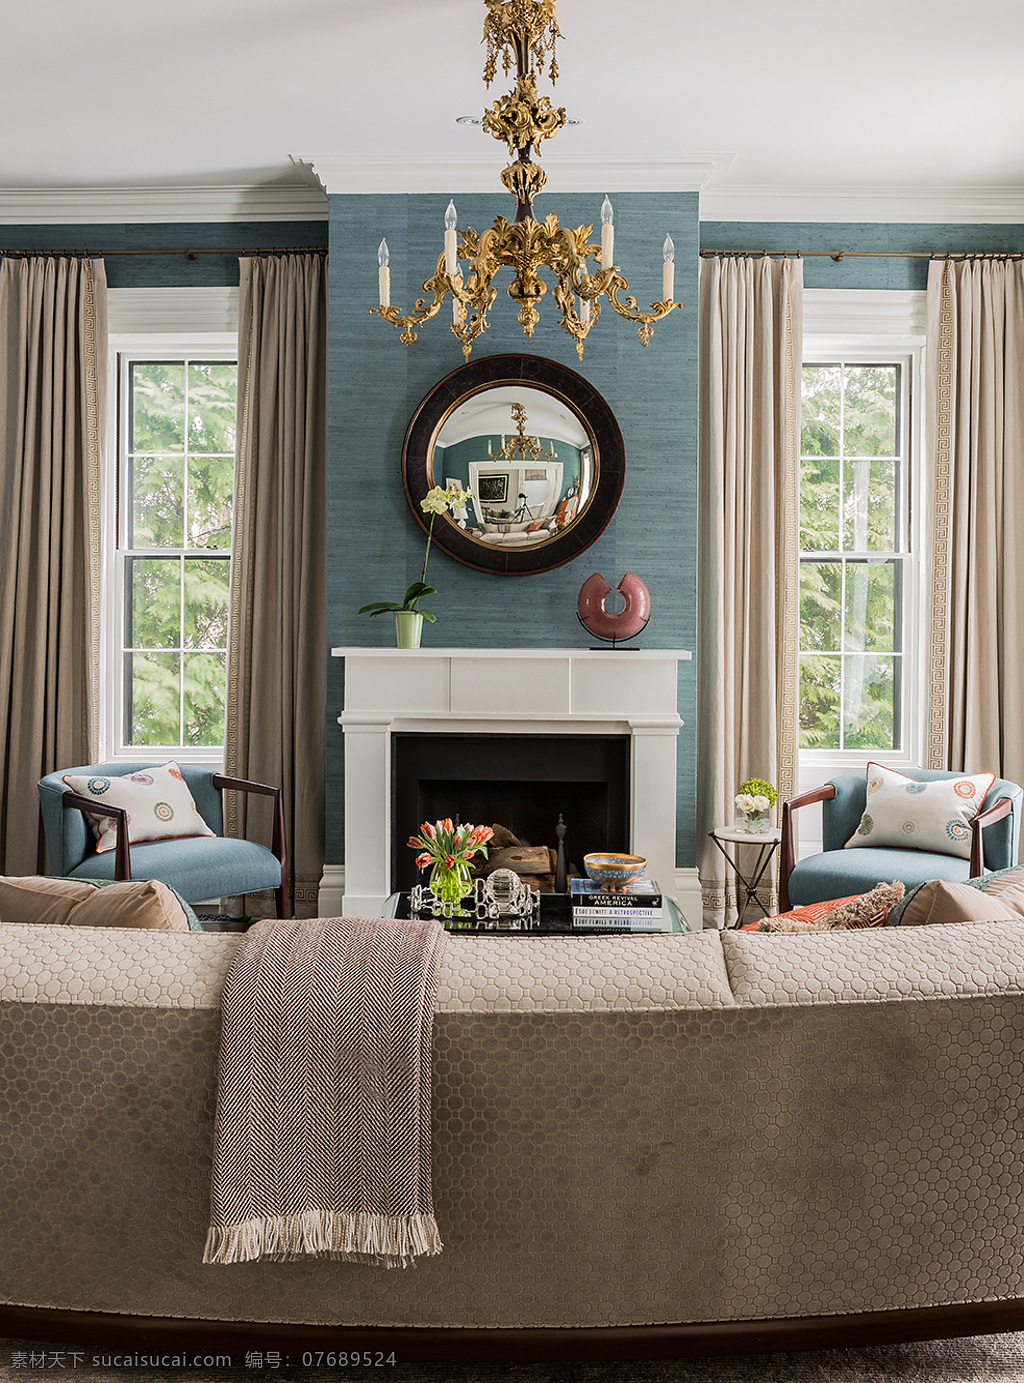 客厅 壁炉 装修 效果图 窗户 窗帘 单人沙发 吊灯 蓝色背景墙 沙发 凸面镜